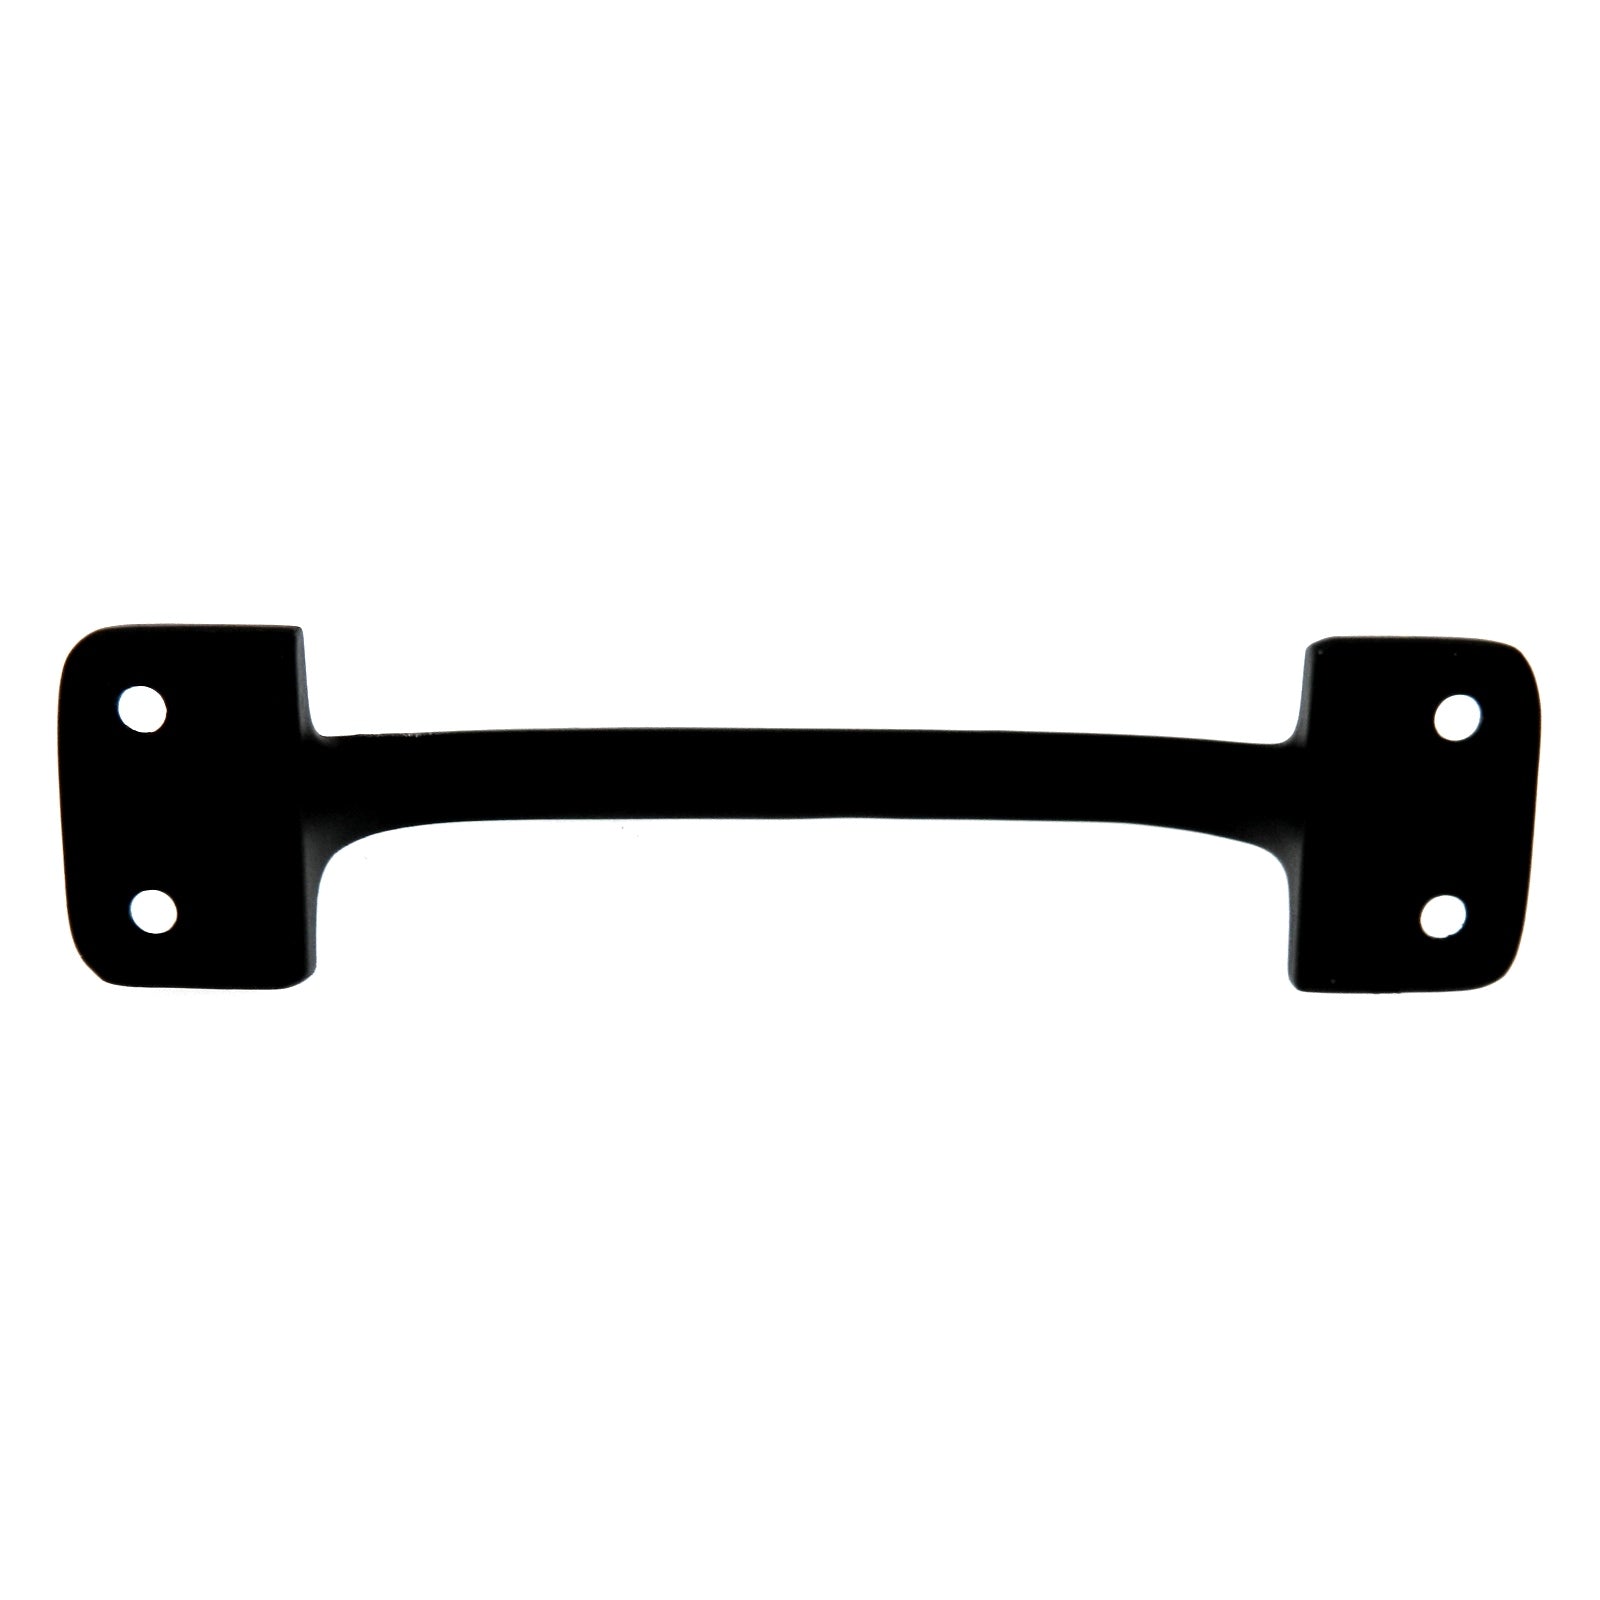 Warwick BH2018BL - Manija de elevación para barra de ventana, color negro, 4 1/4"cc